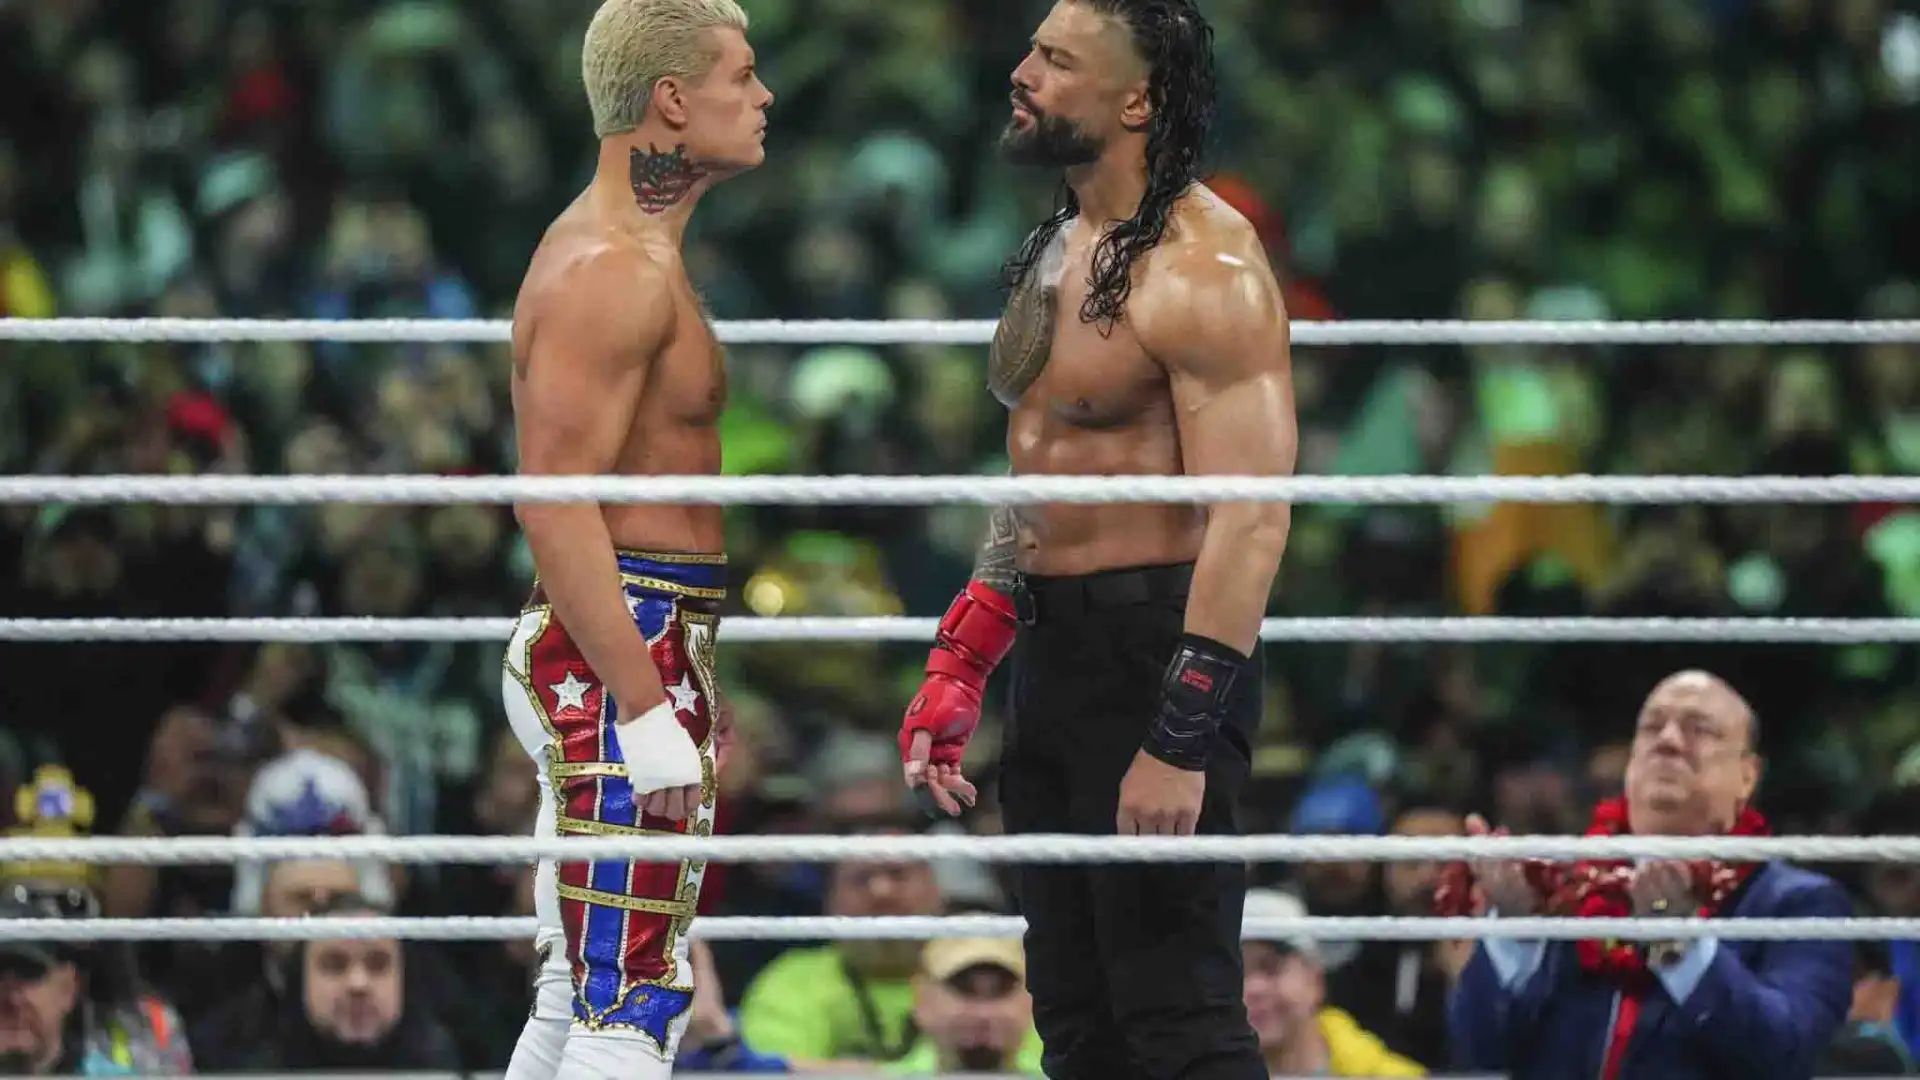 Il main event è stato tra Roman Reigns e Cody Rhodes.